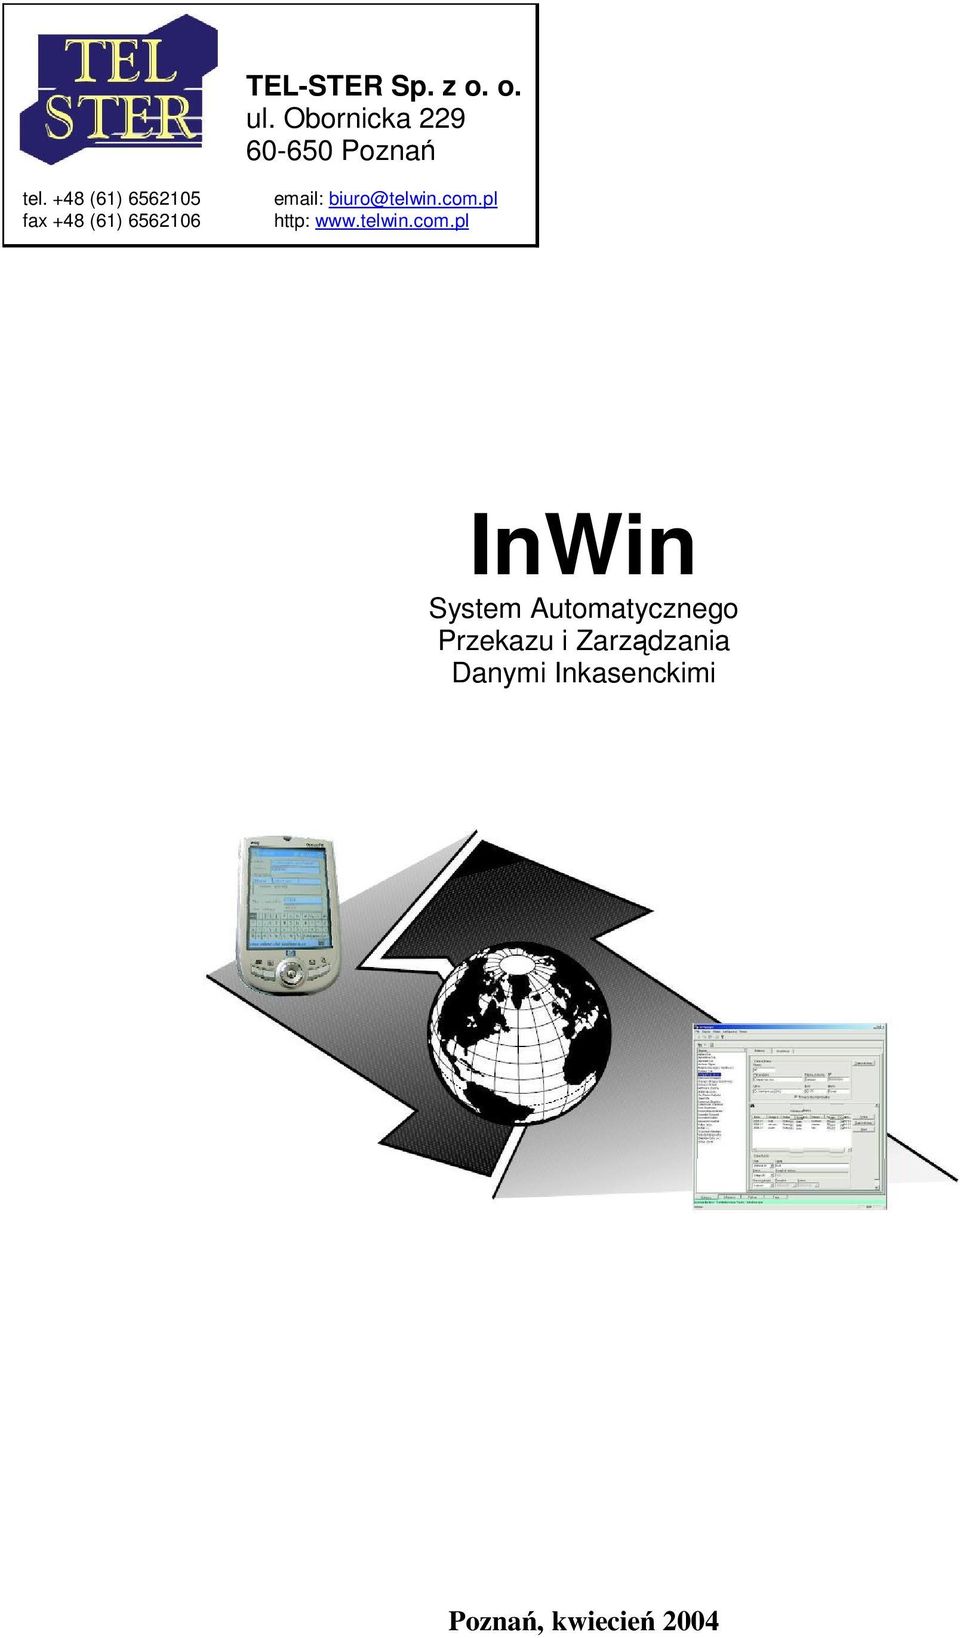 com.pl http: www.telwin.com.pl InWin System Automatycznego